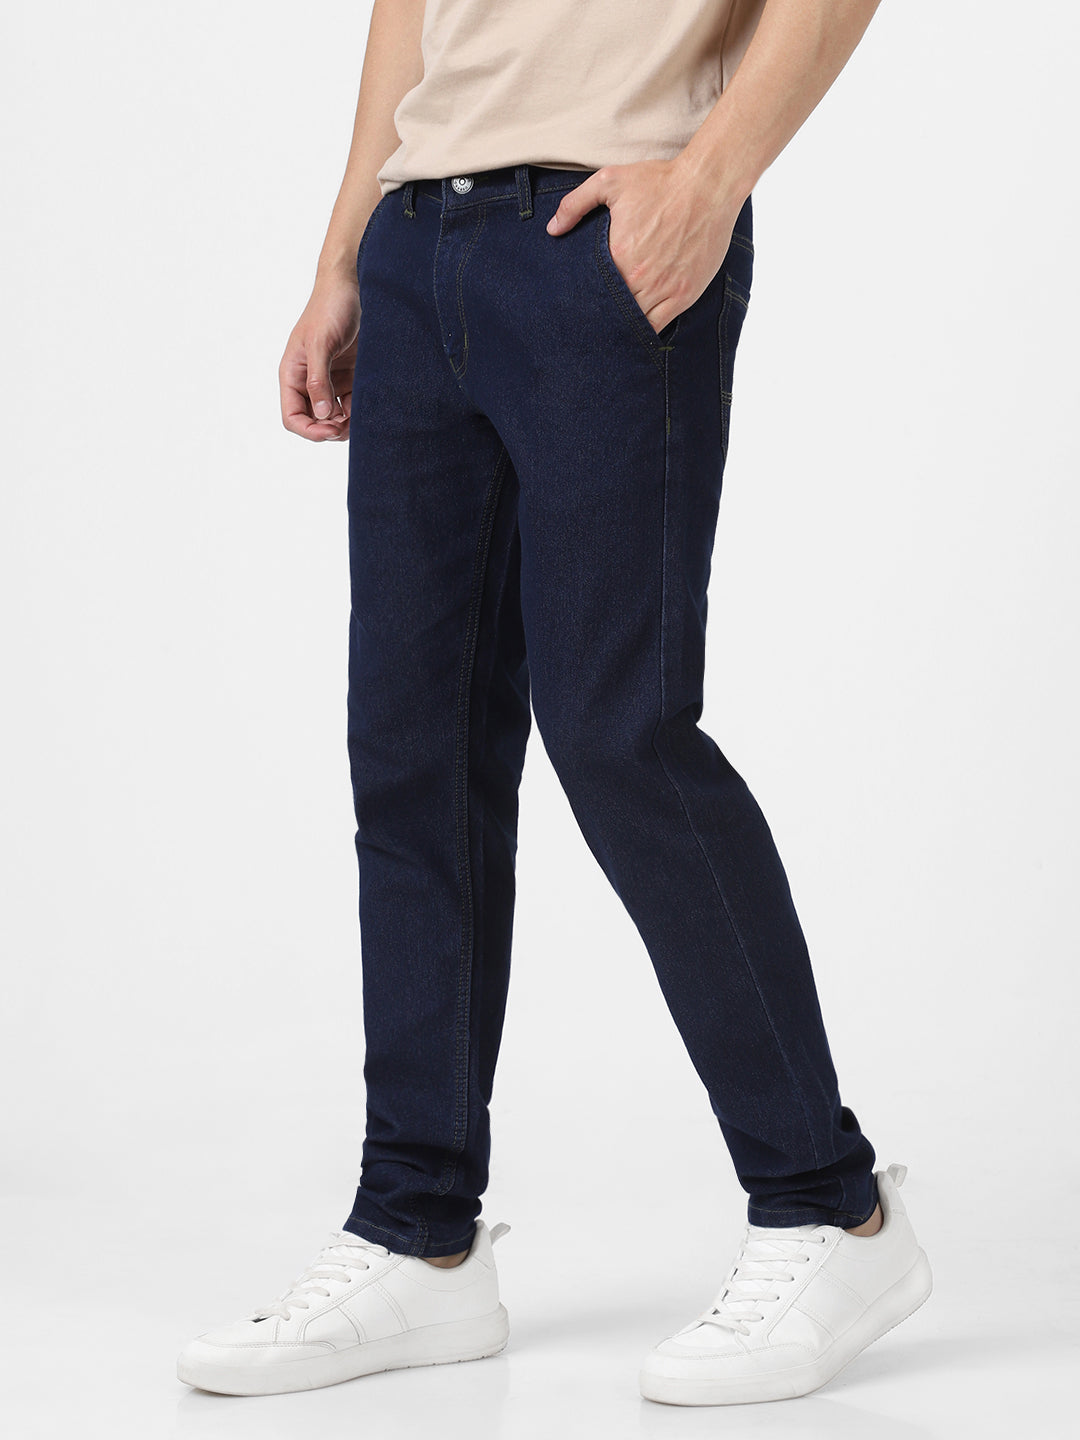 Men's Dark Blue Slim Fit Washed Jeans Stretchable